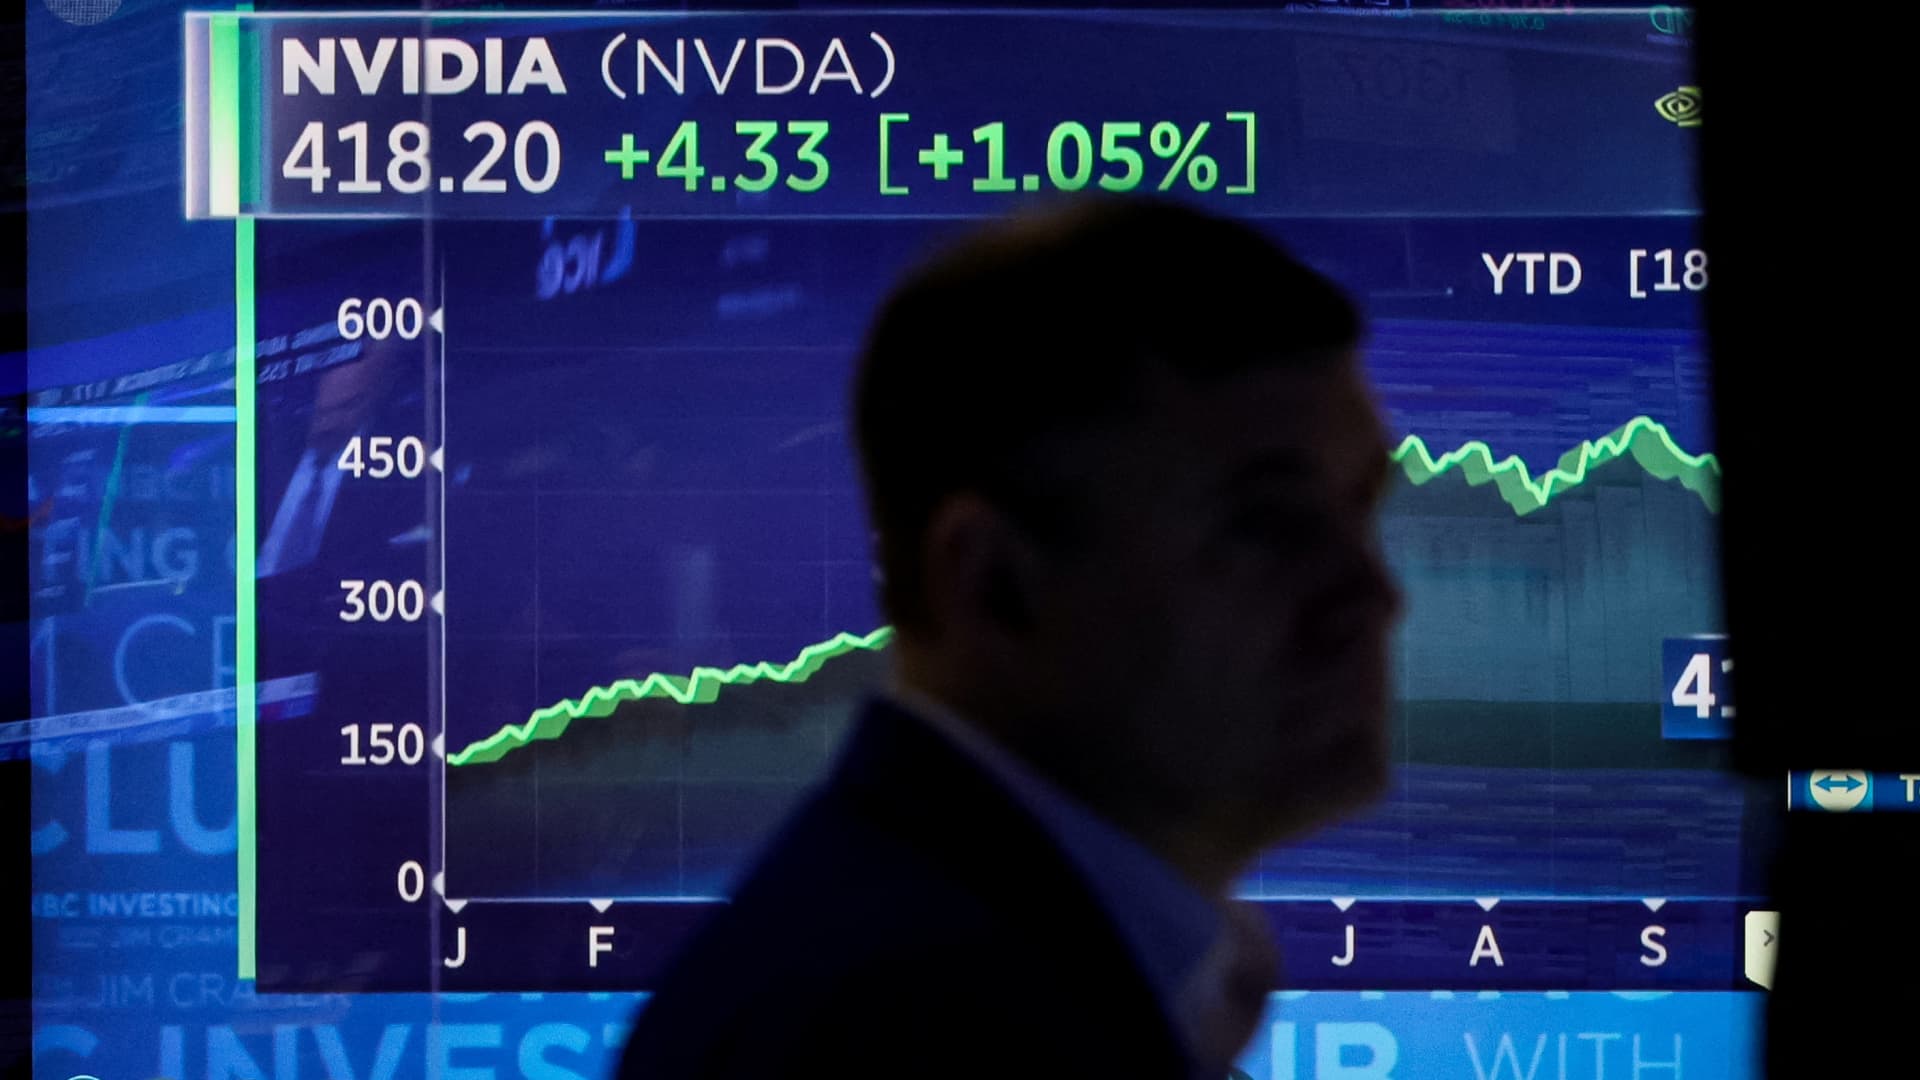 A történelem azt mutatja, hogy amikor az Nvidia felfelé megy, ezek a globális részvények is emelkedni szoktak.